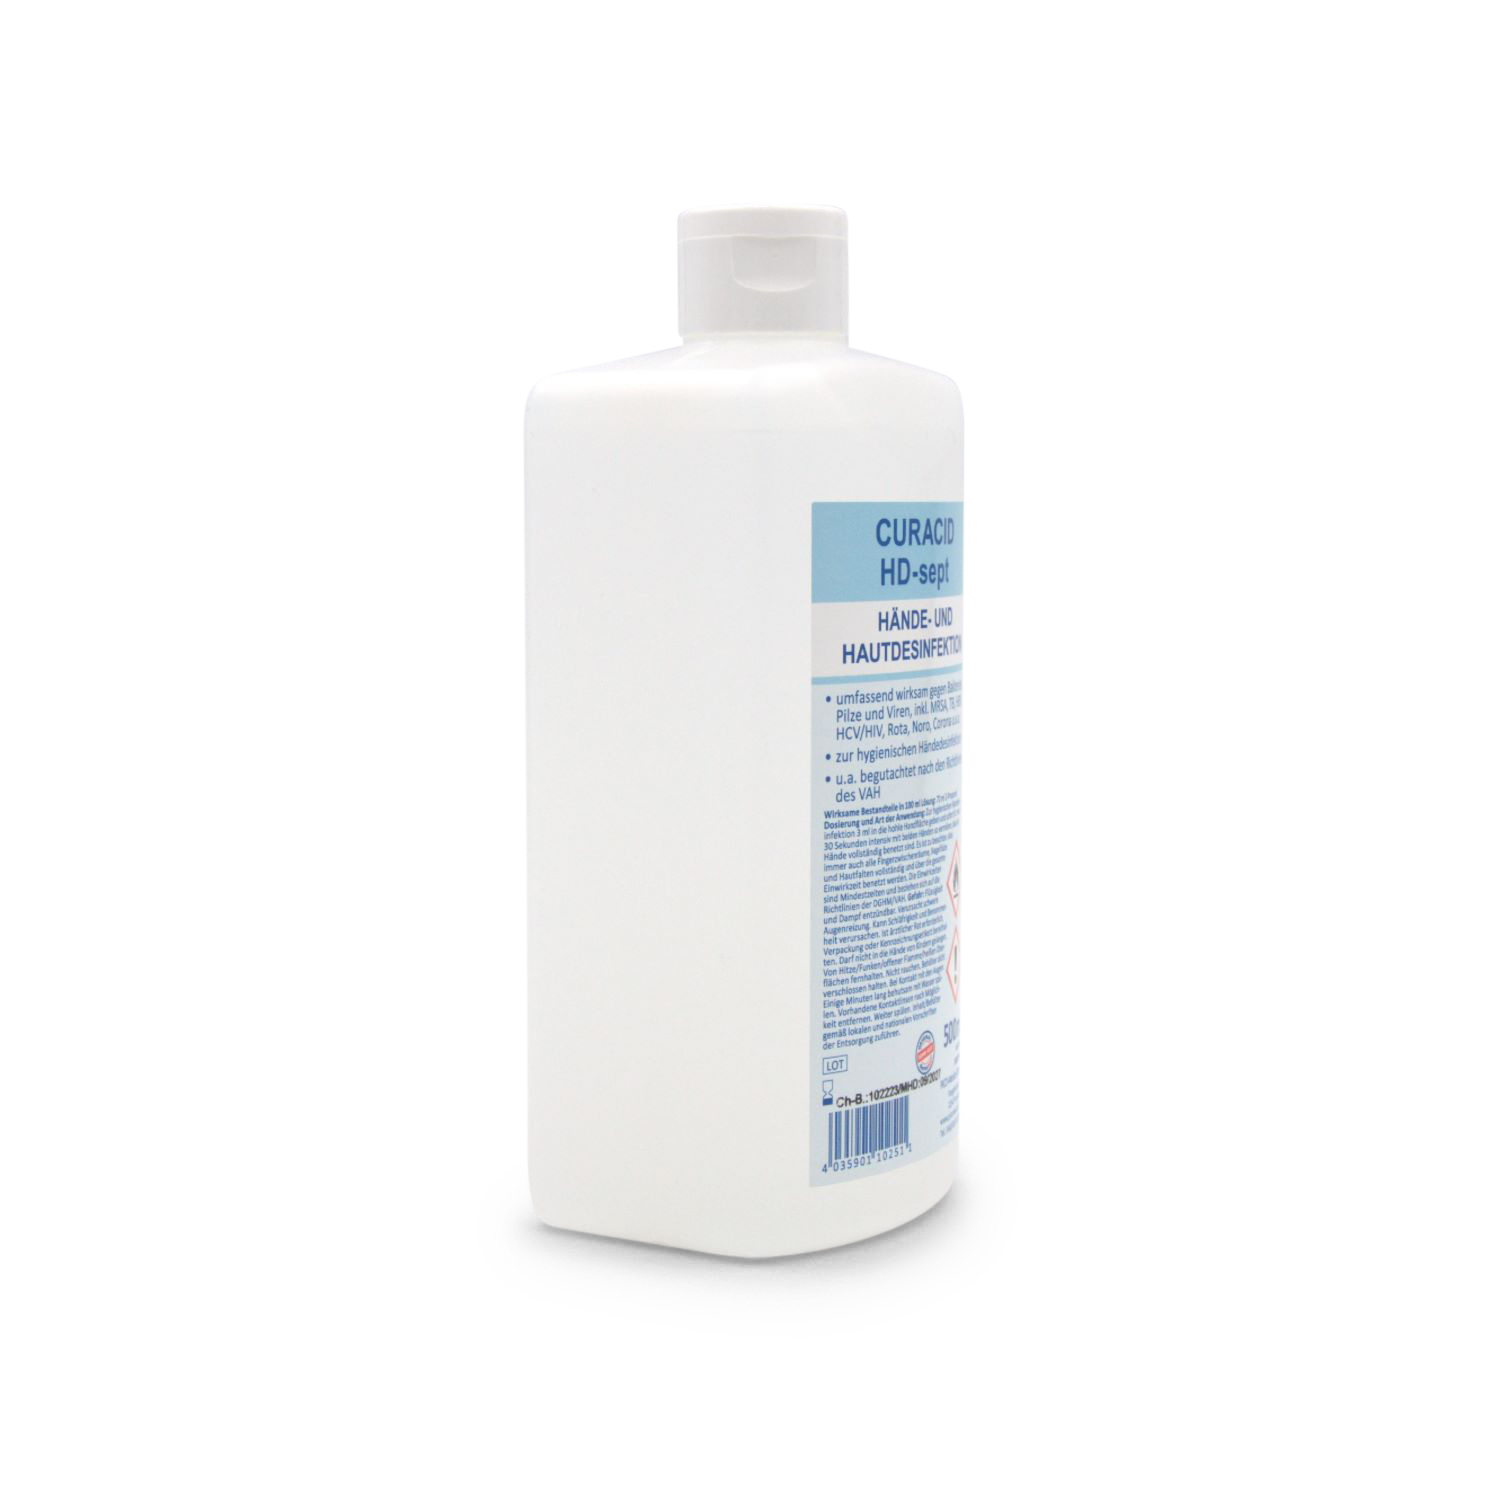 Curacid HD-sept Hände- und Hautdesinfektion (500 ml, Spenderflasche)